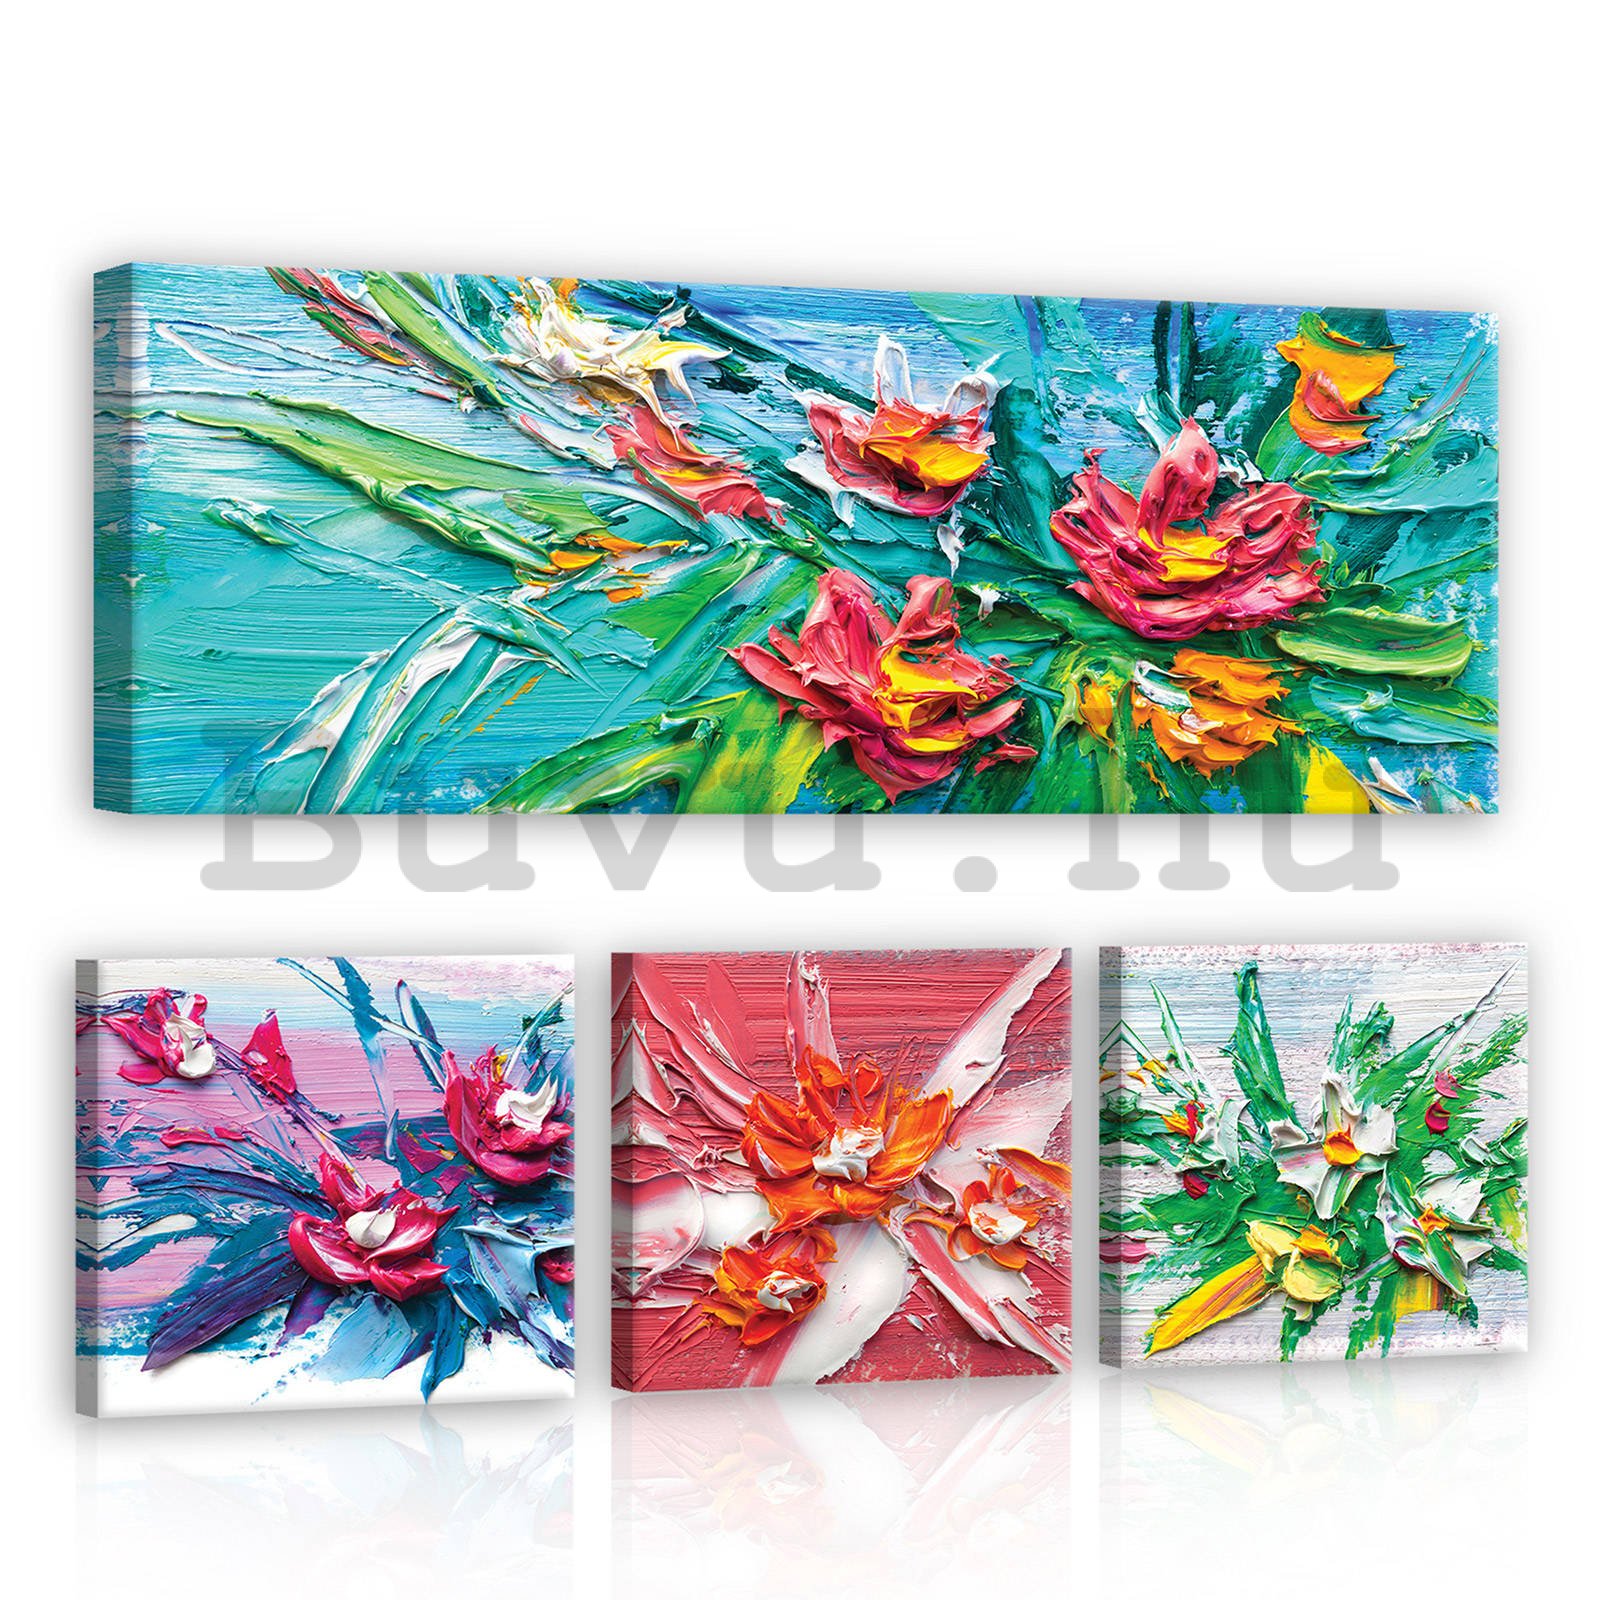 Vászonkép: Festett virágok - készlet 1 db 80x30 cm és 3 db 25,8x24,8 cm